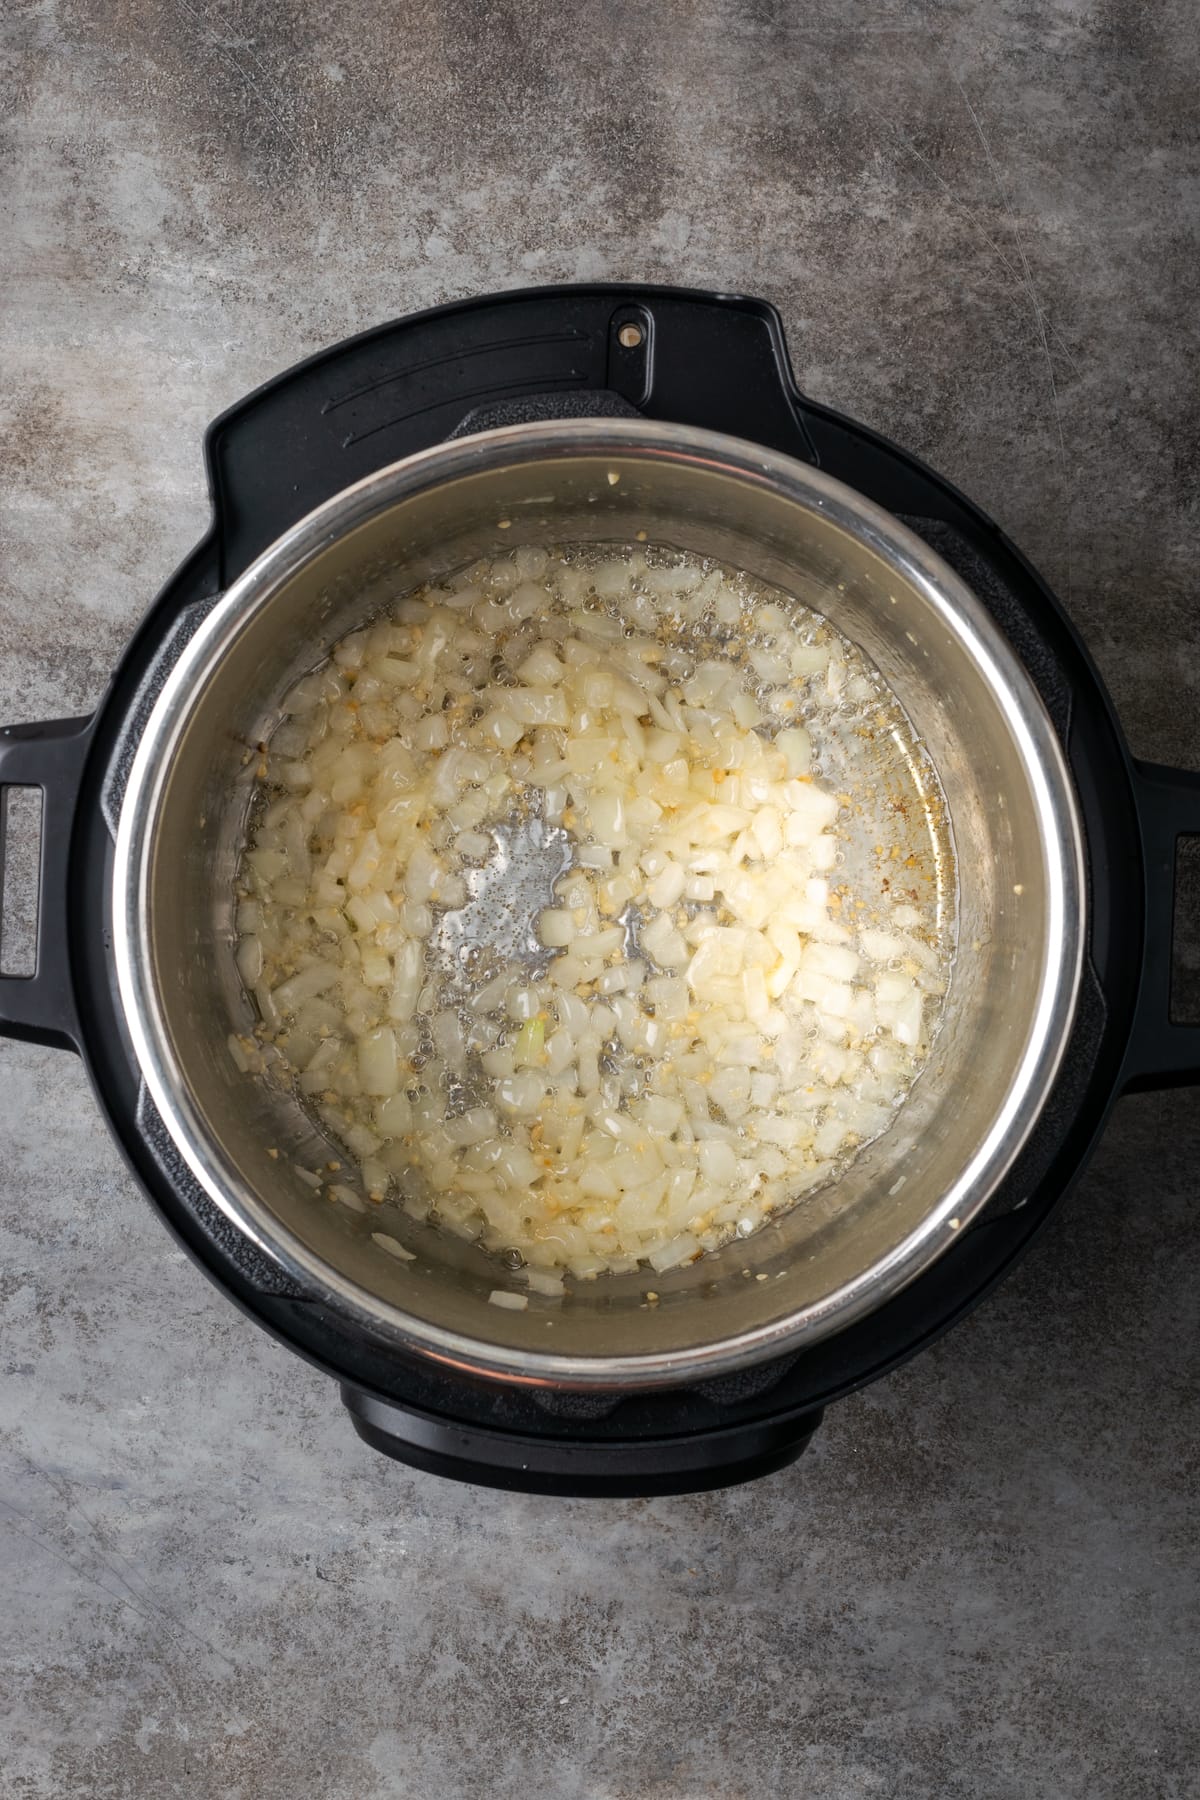 Diced onions and garlic sautéing inside an Instant Pot.